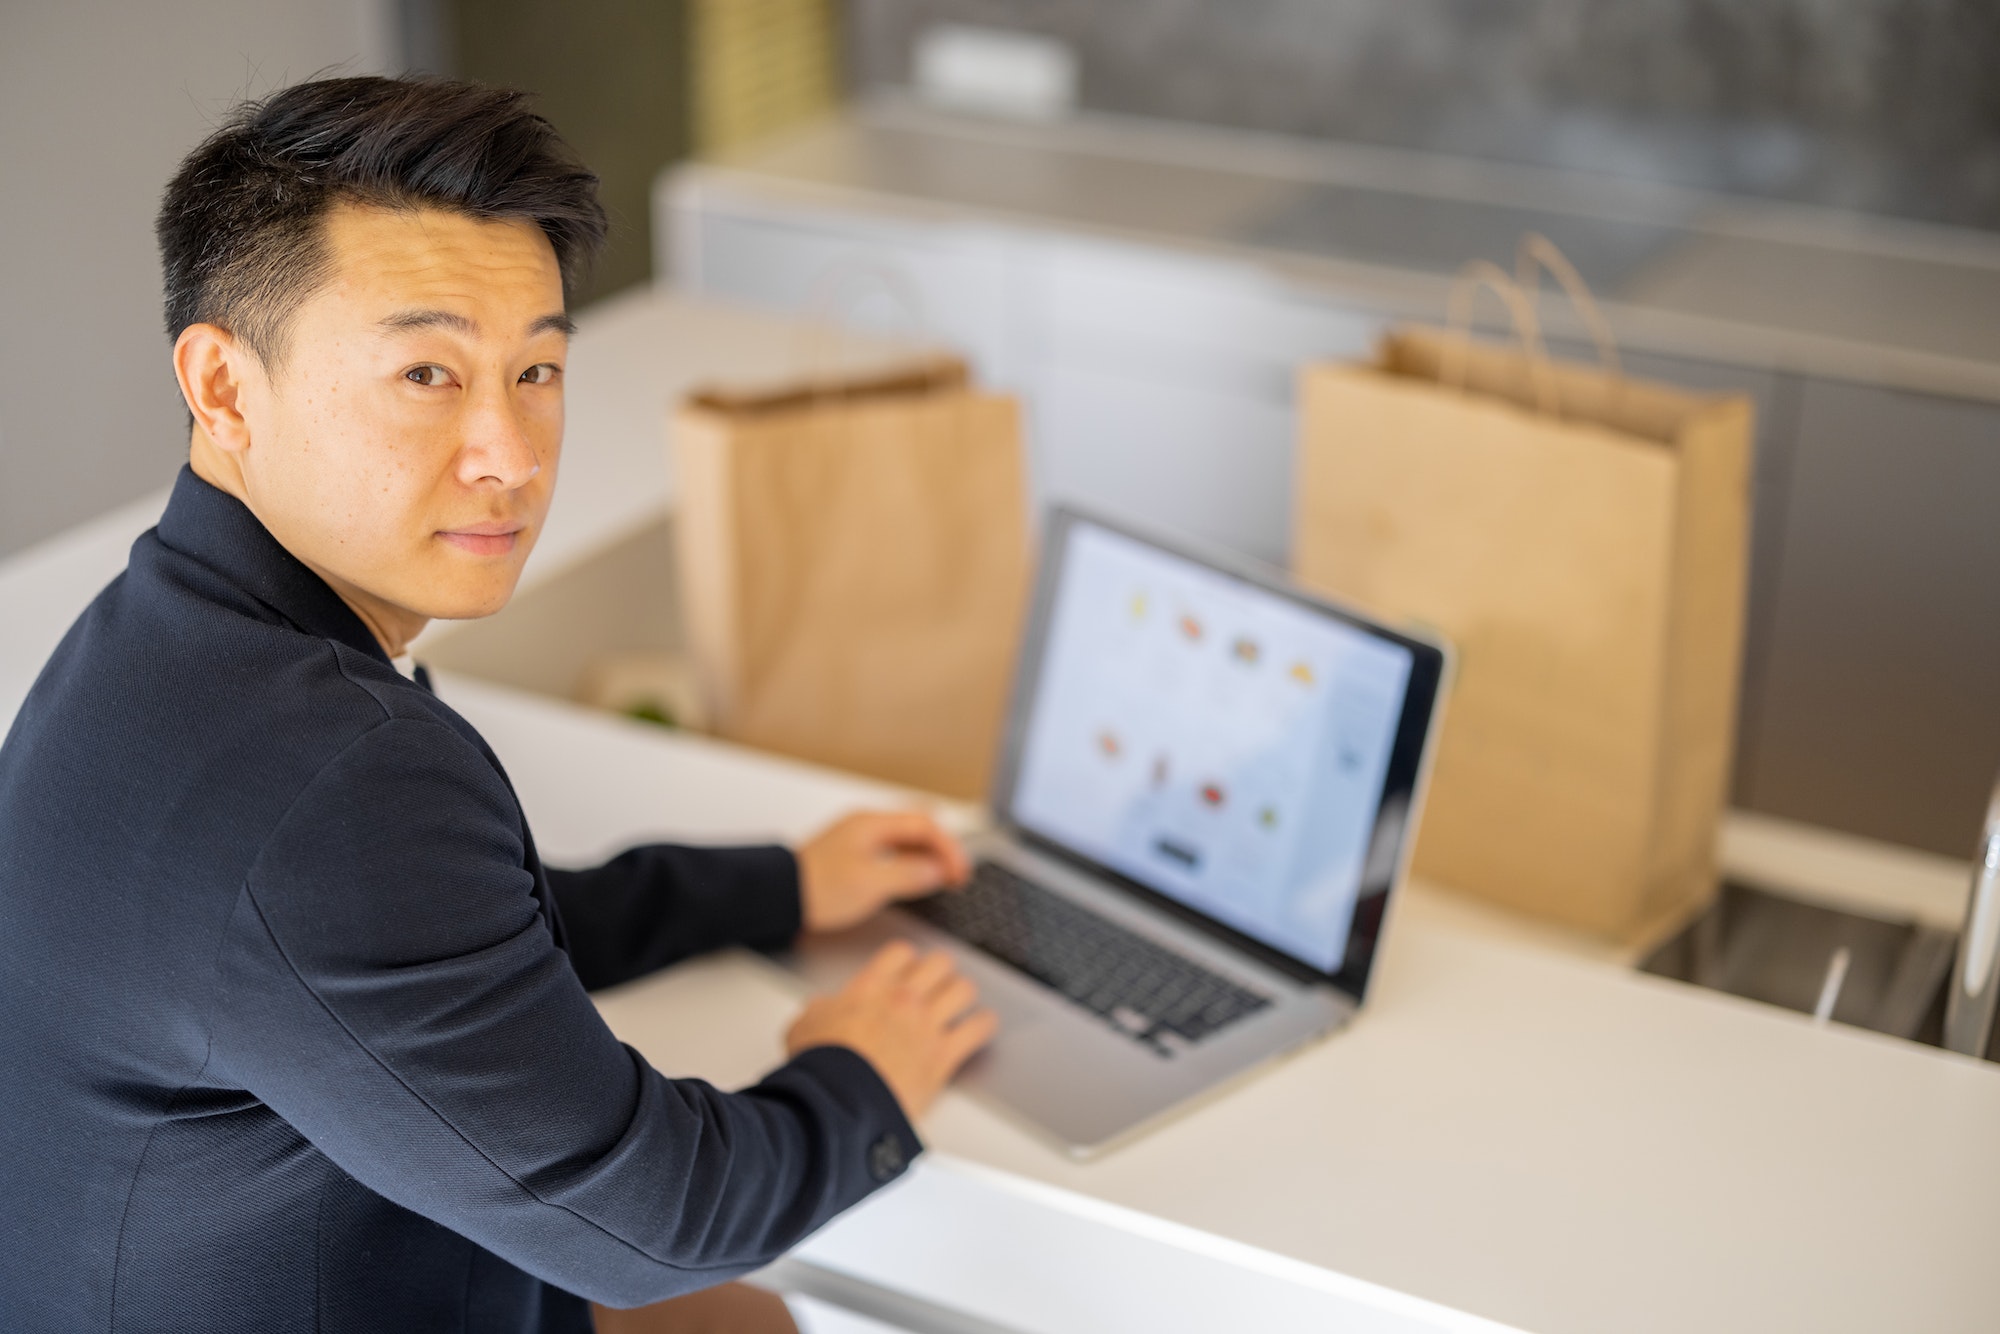 Man choosing groceries in online store on laptop